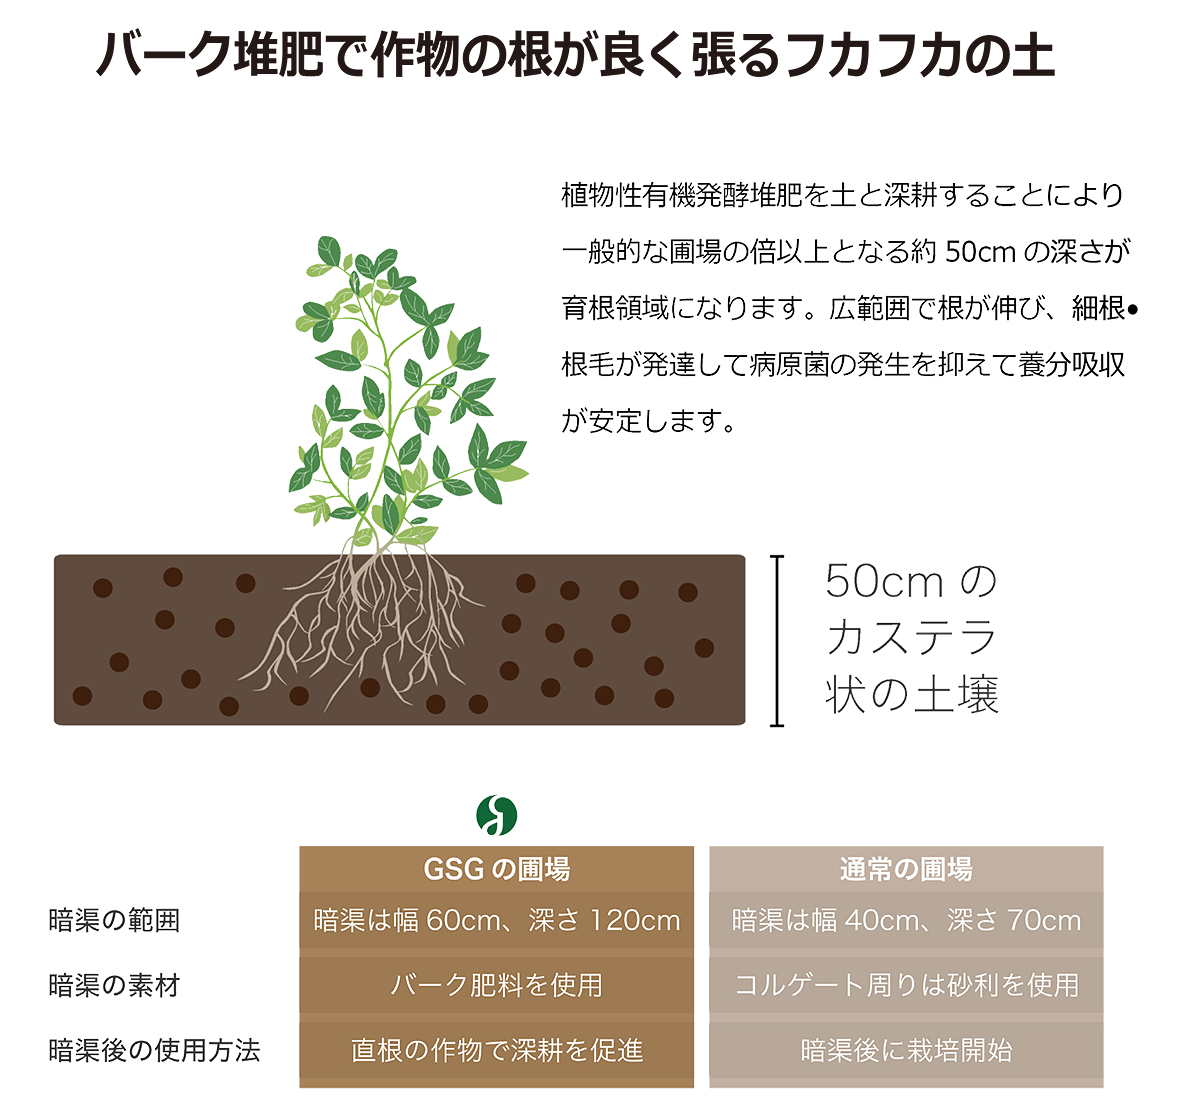 バーク堆肥で作物の根が良く張るフカフカの土